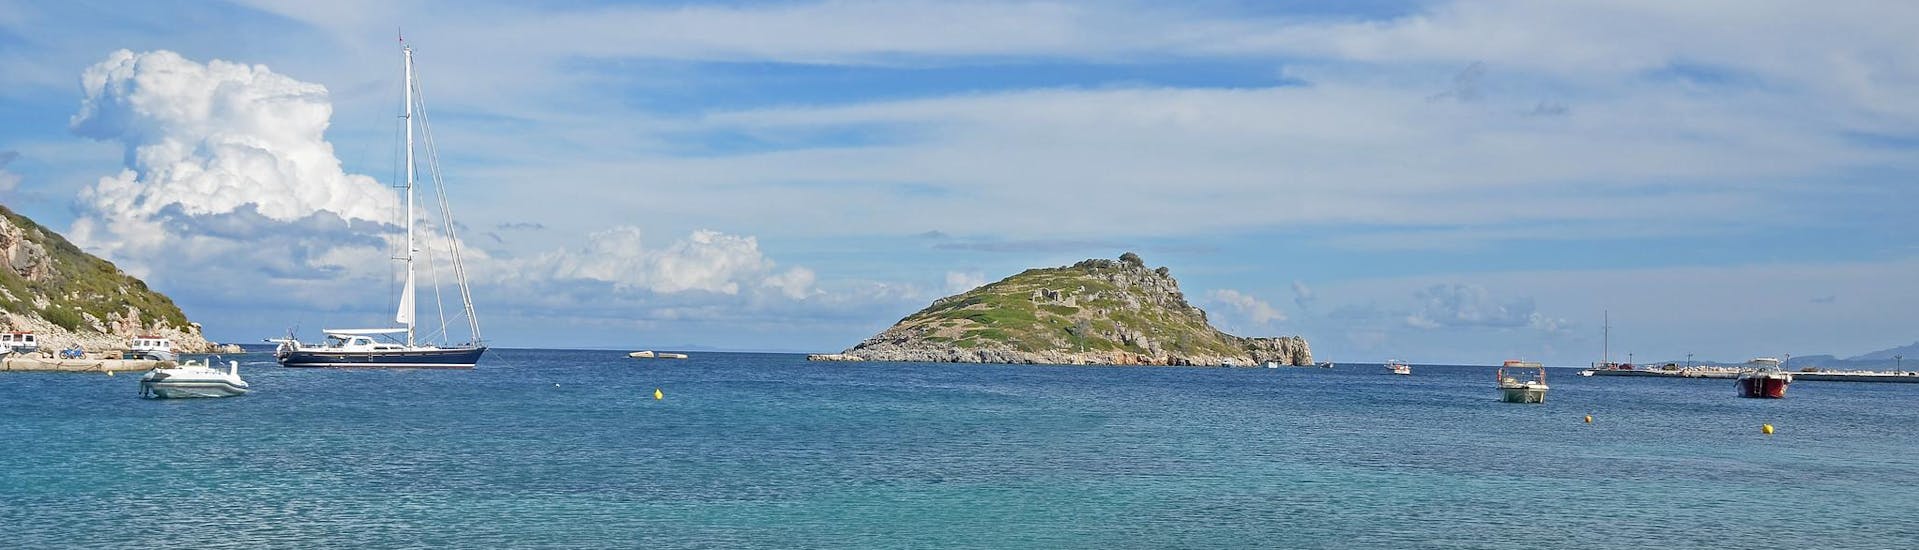 Le port d'Agios Nikolaos à Zante, point de départ des excursions en bateau dans les îles Ioniennes.